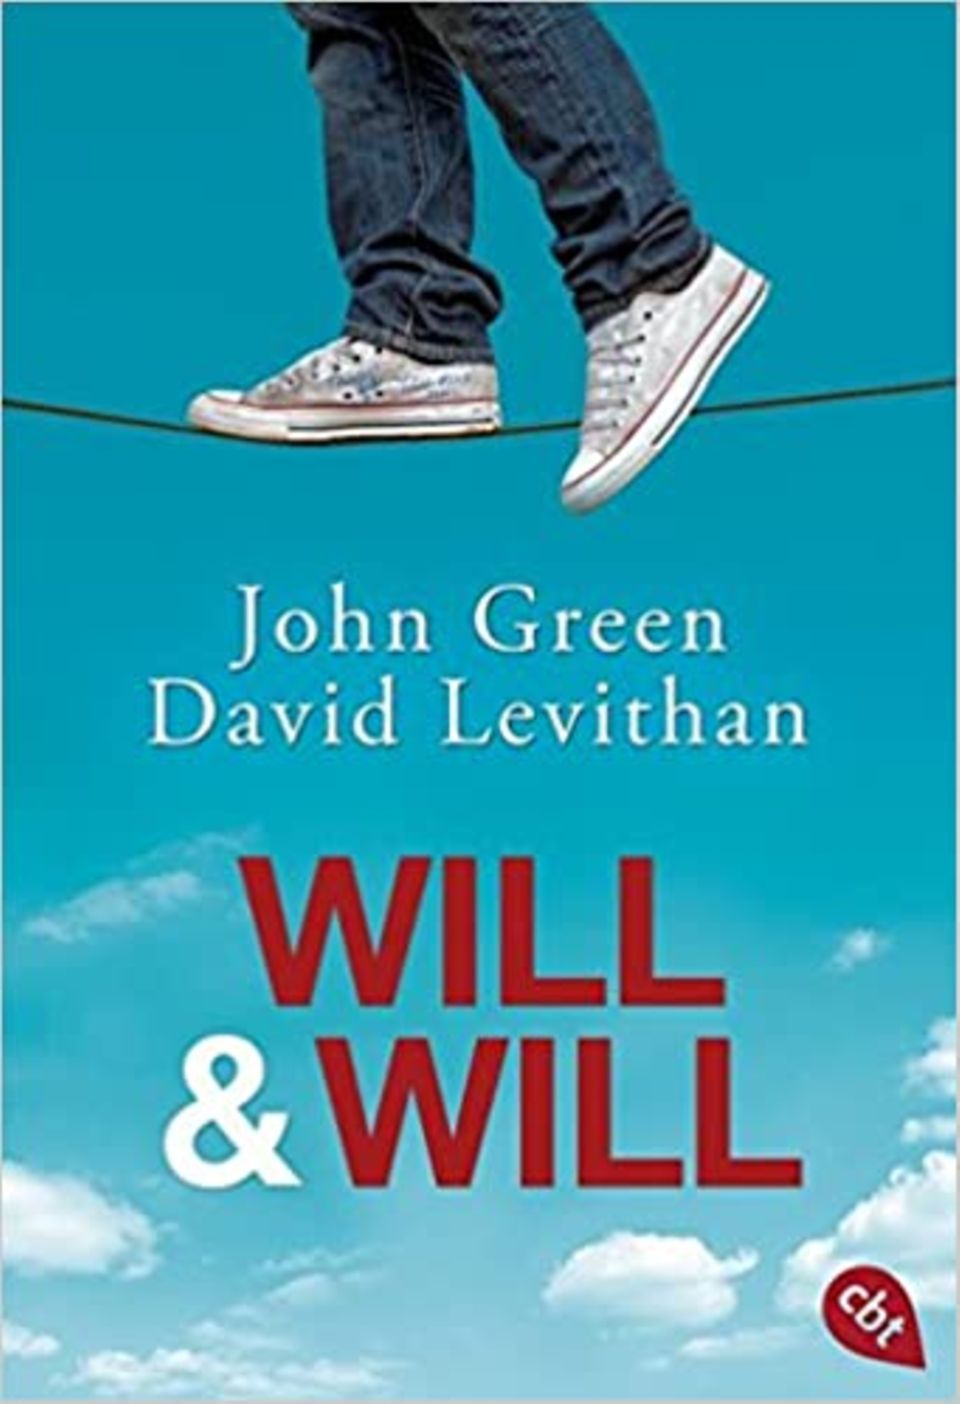 Buchempfehlung: Will & Will